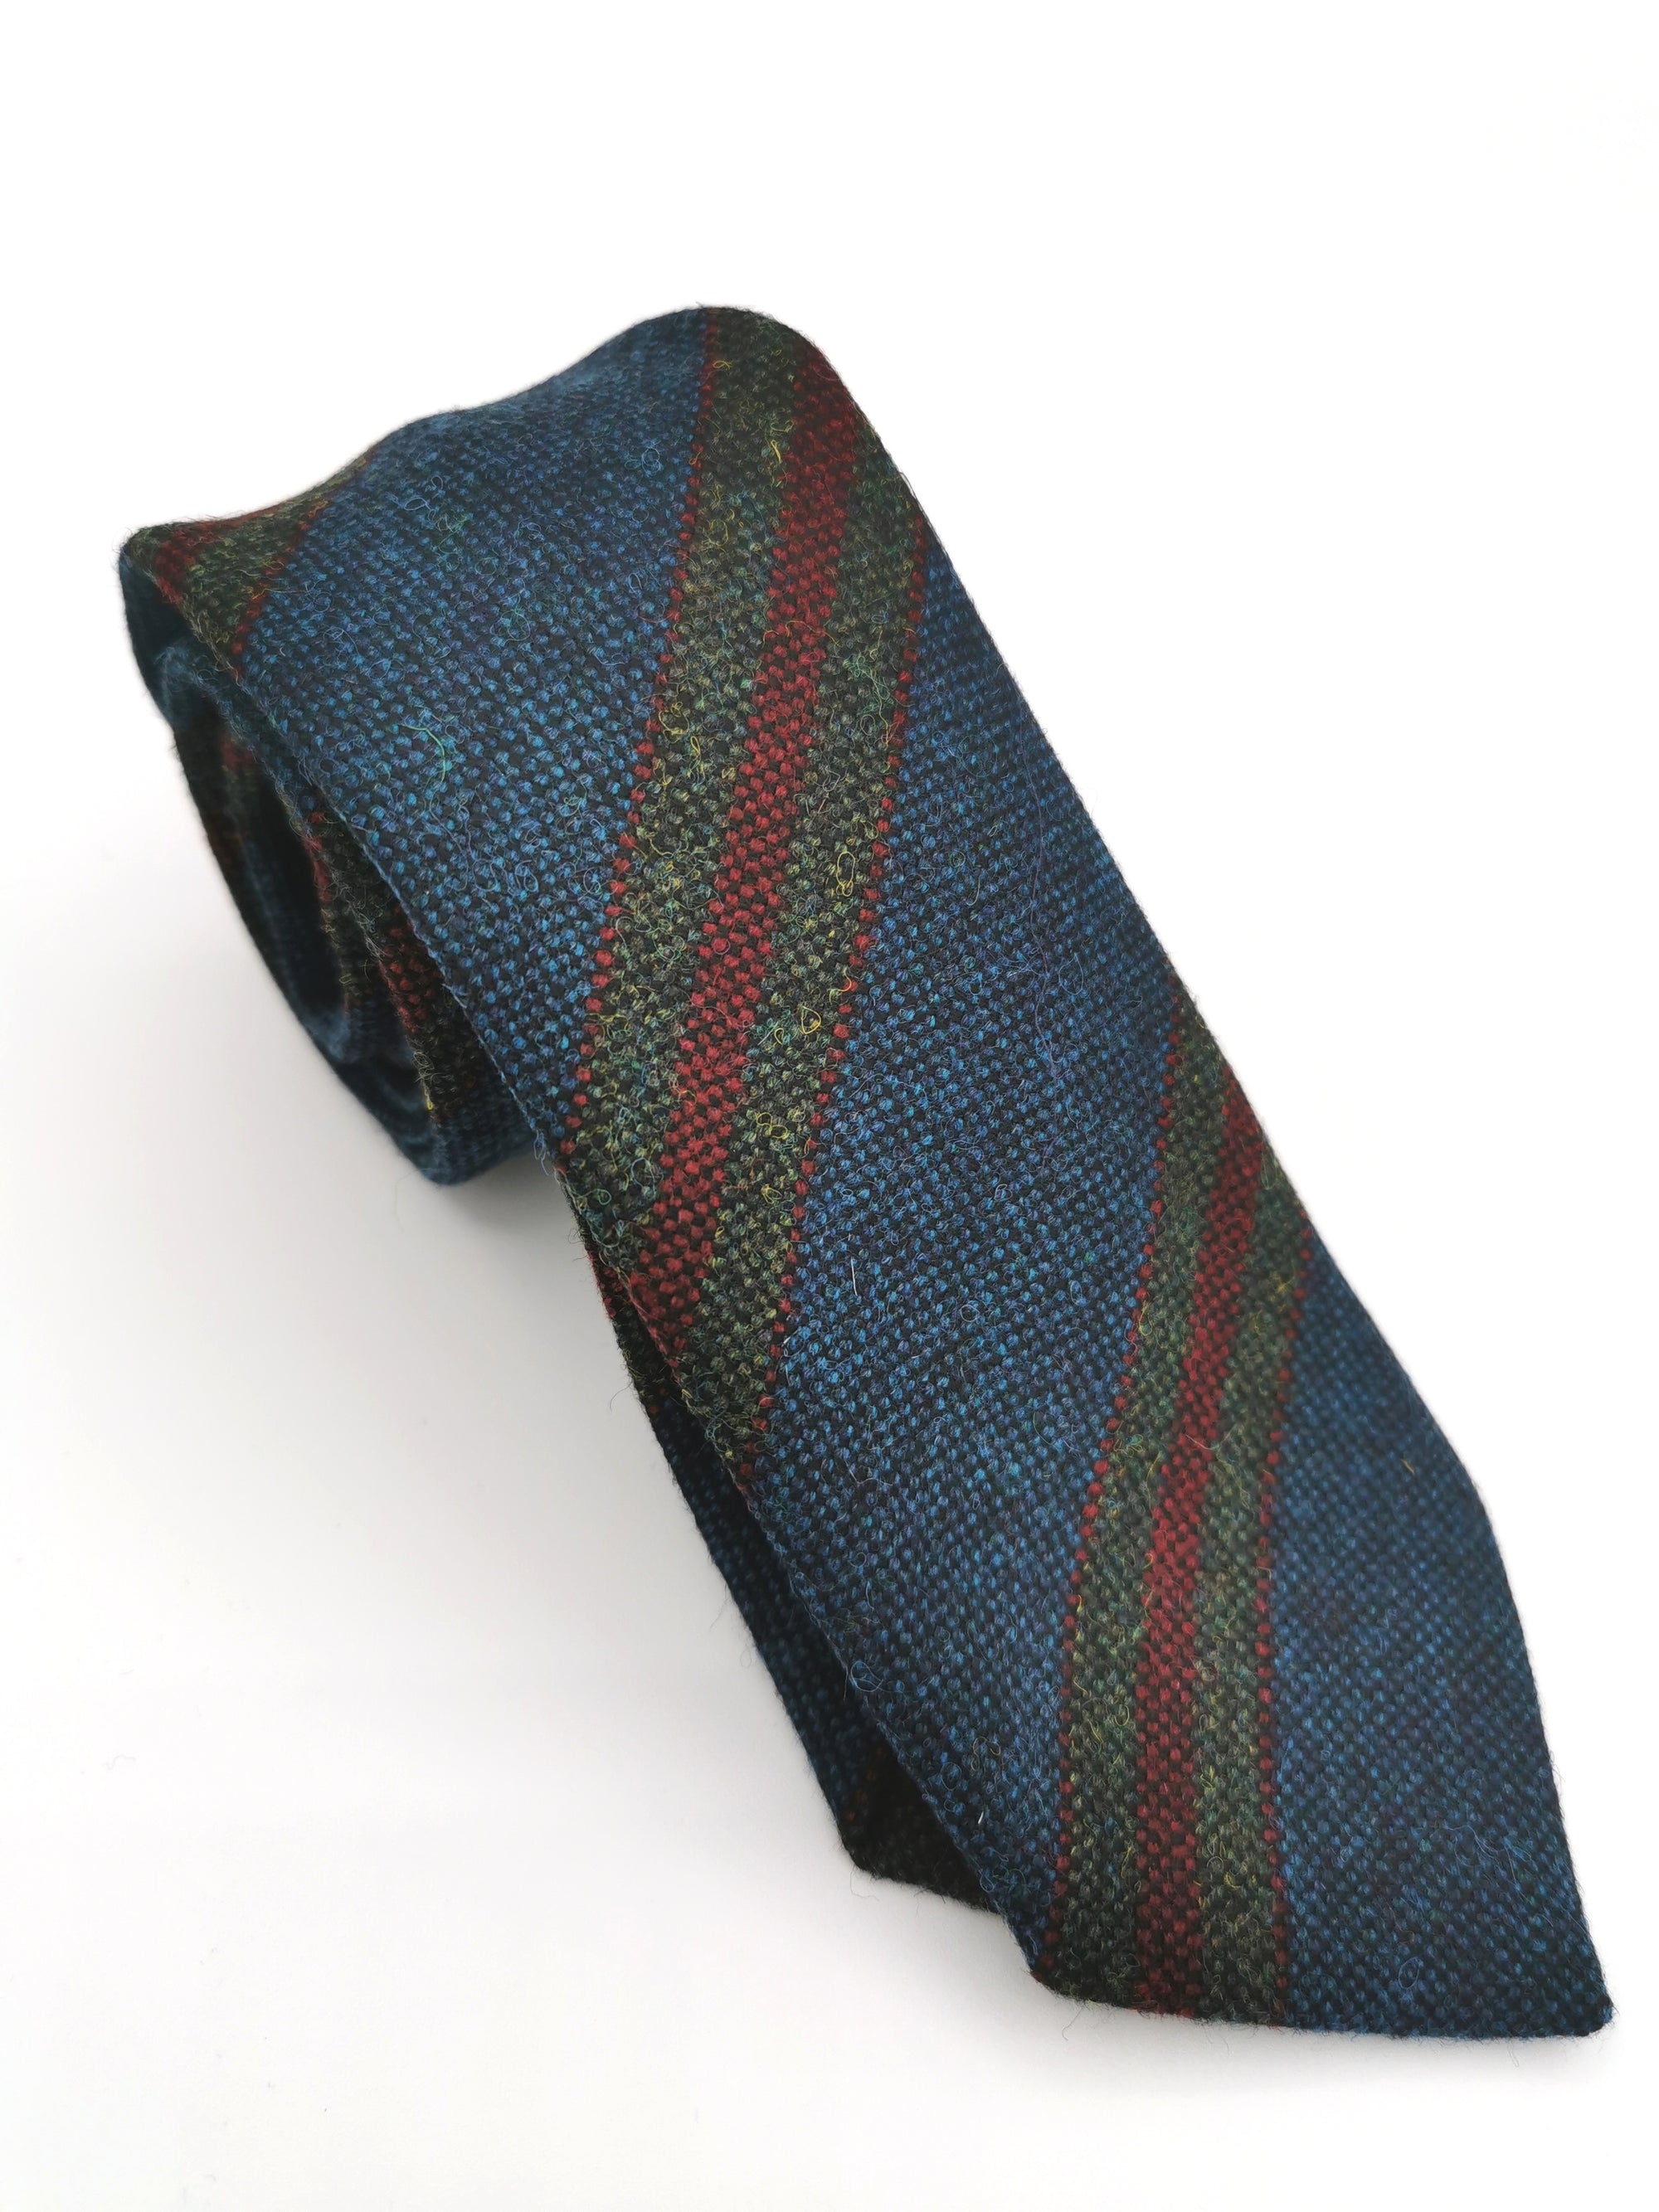 Ferala Turquoise Blue Striped Wool Tie